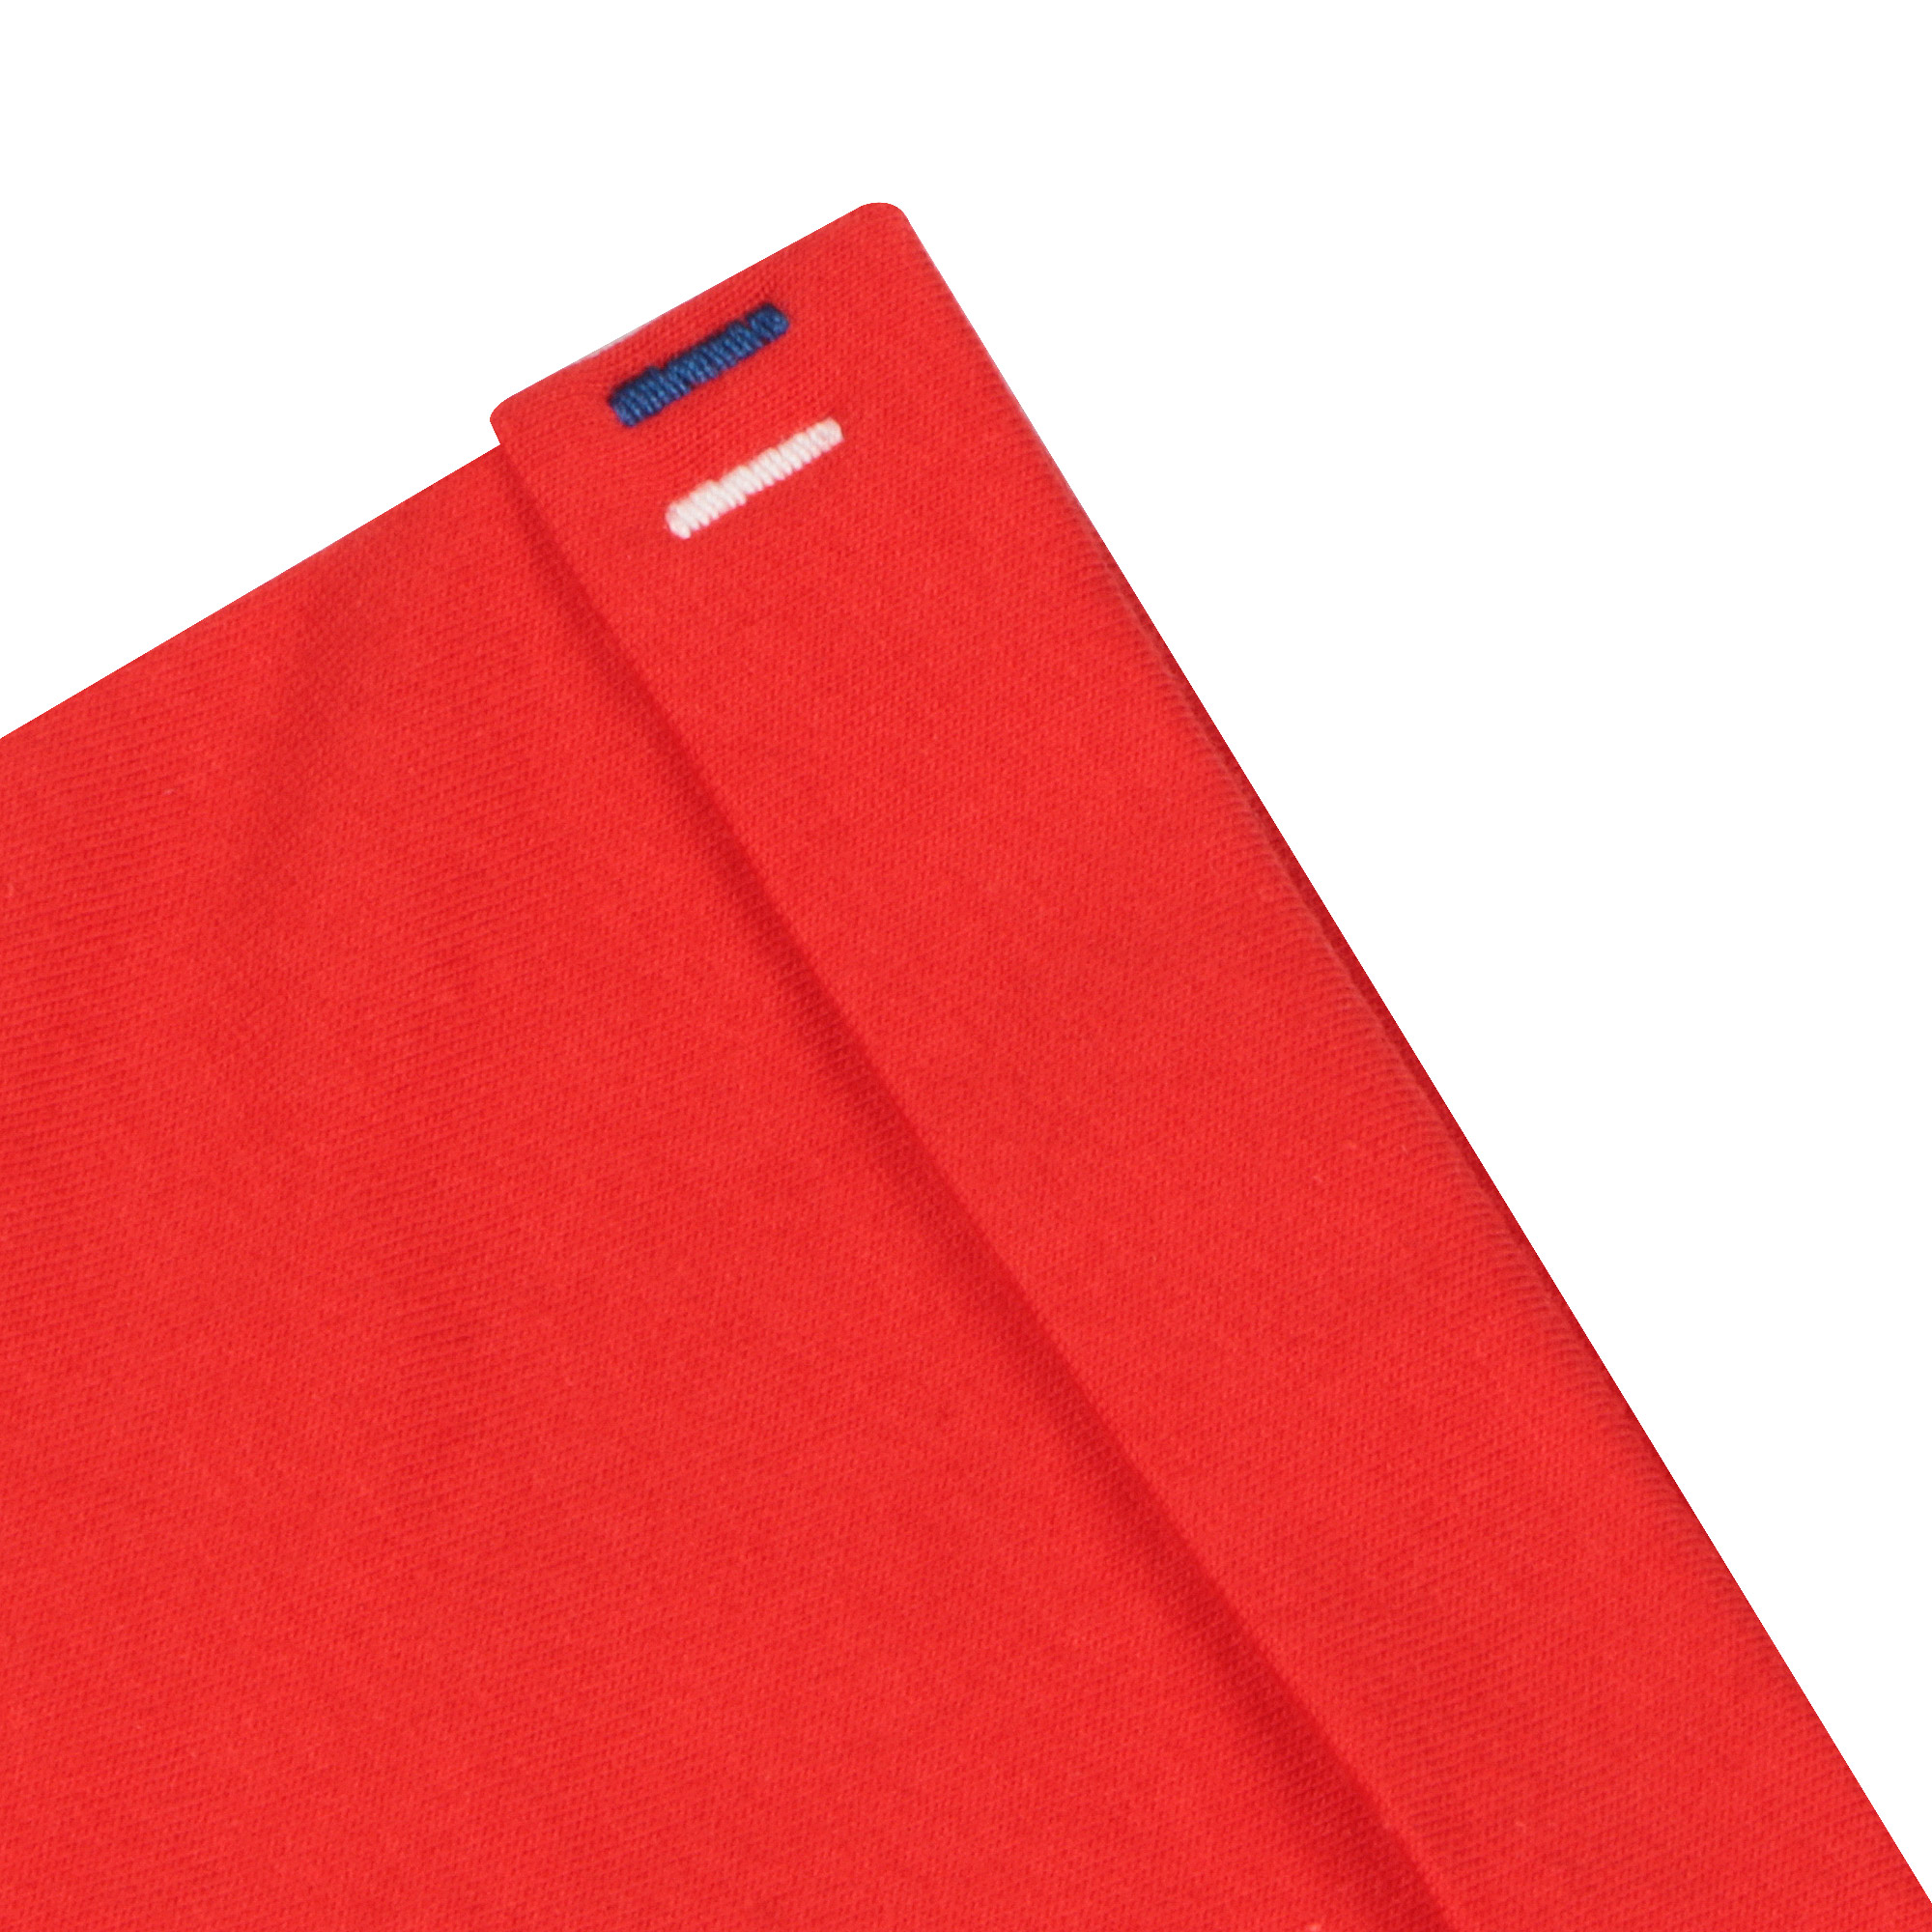 Мужская футболка Pantelemone MF-898 красная 48, цвет красный, размер 48 - фото 5